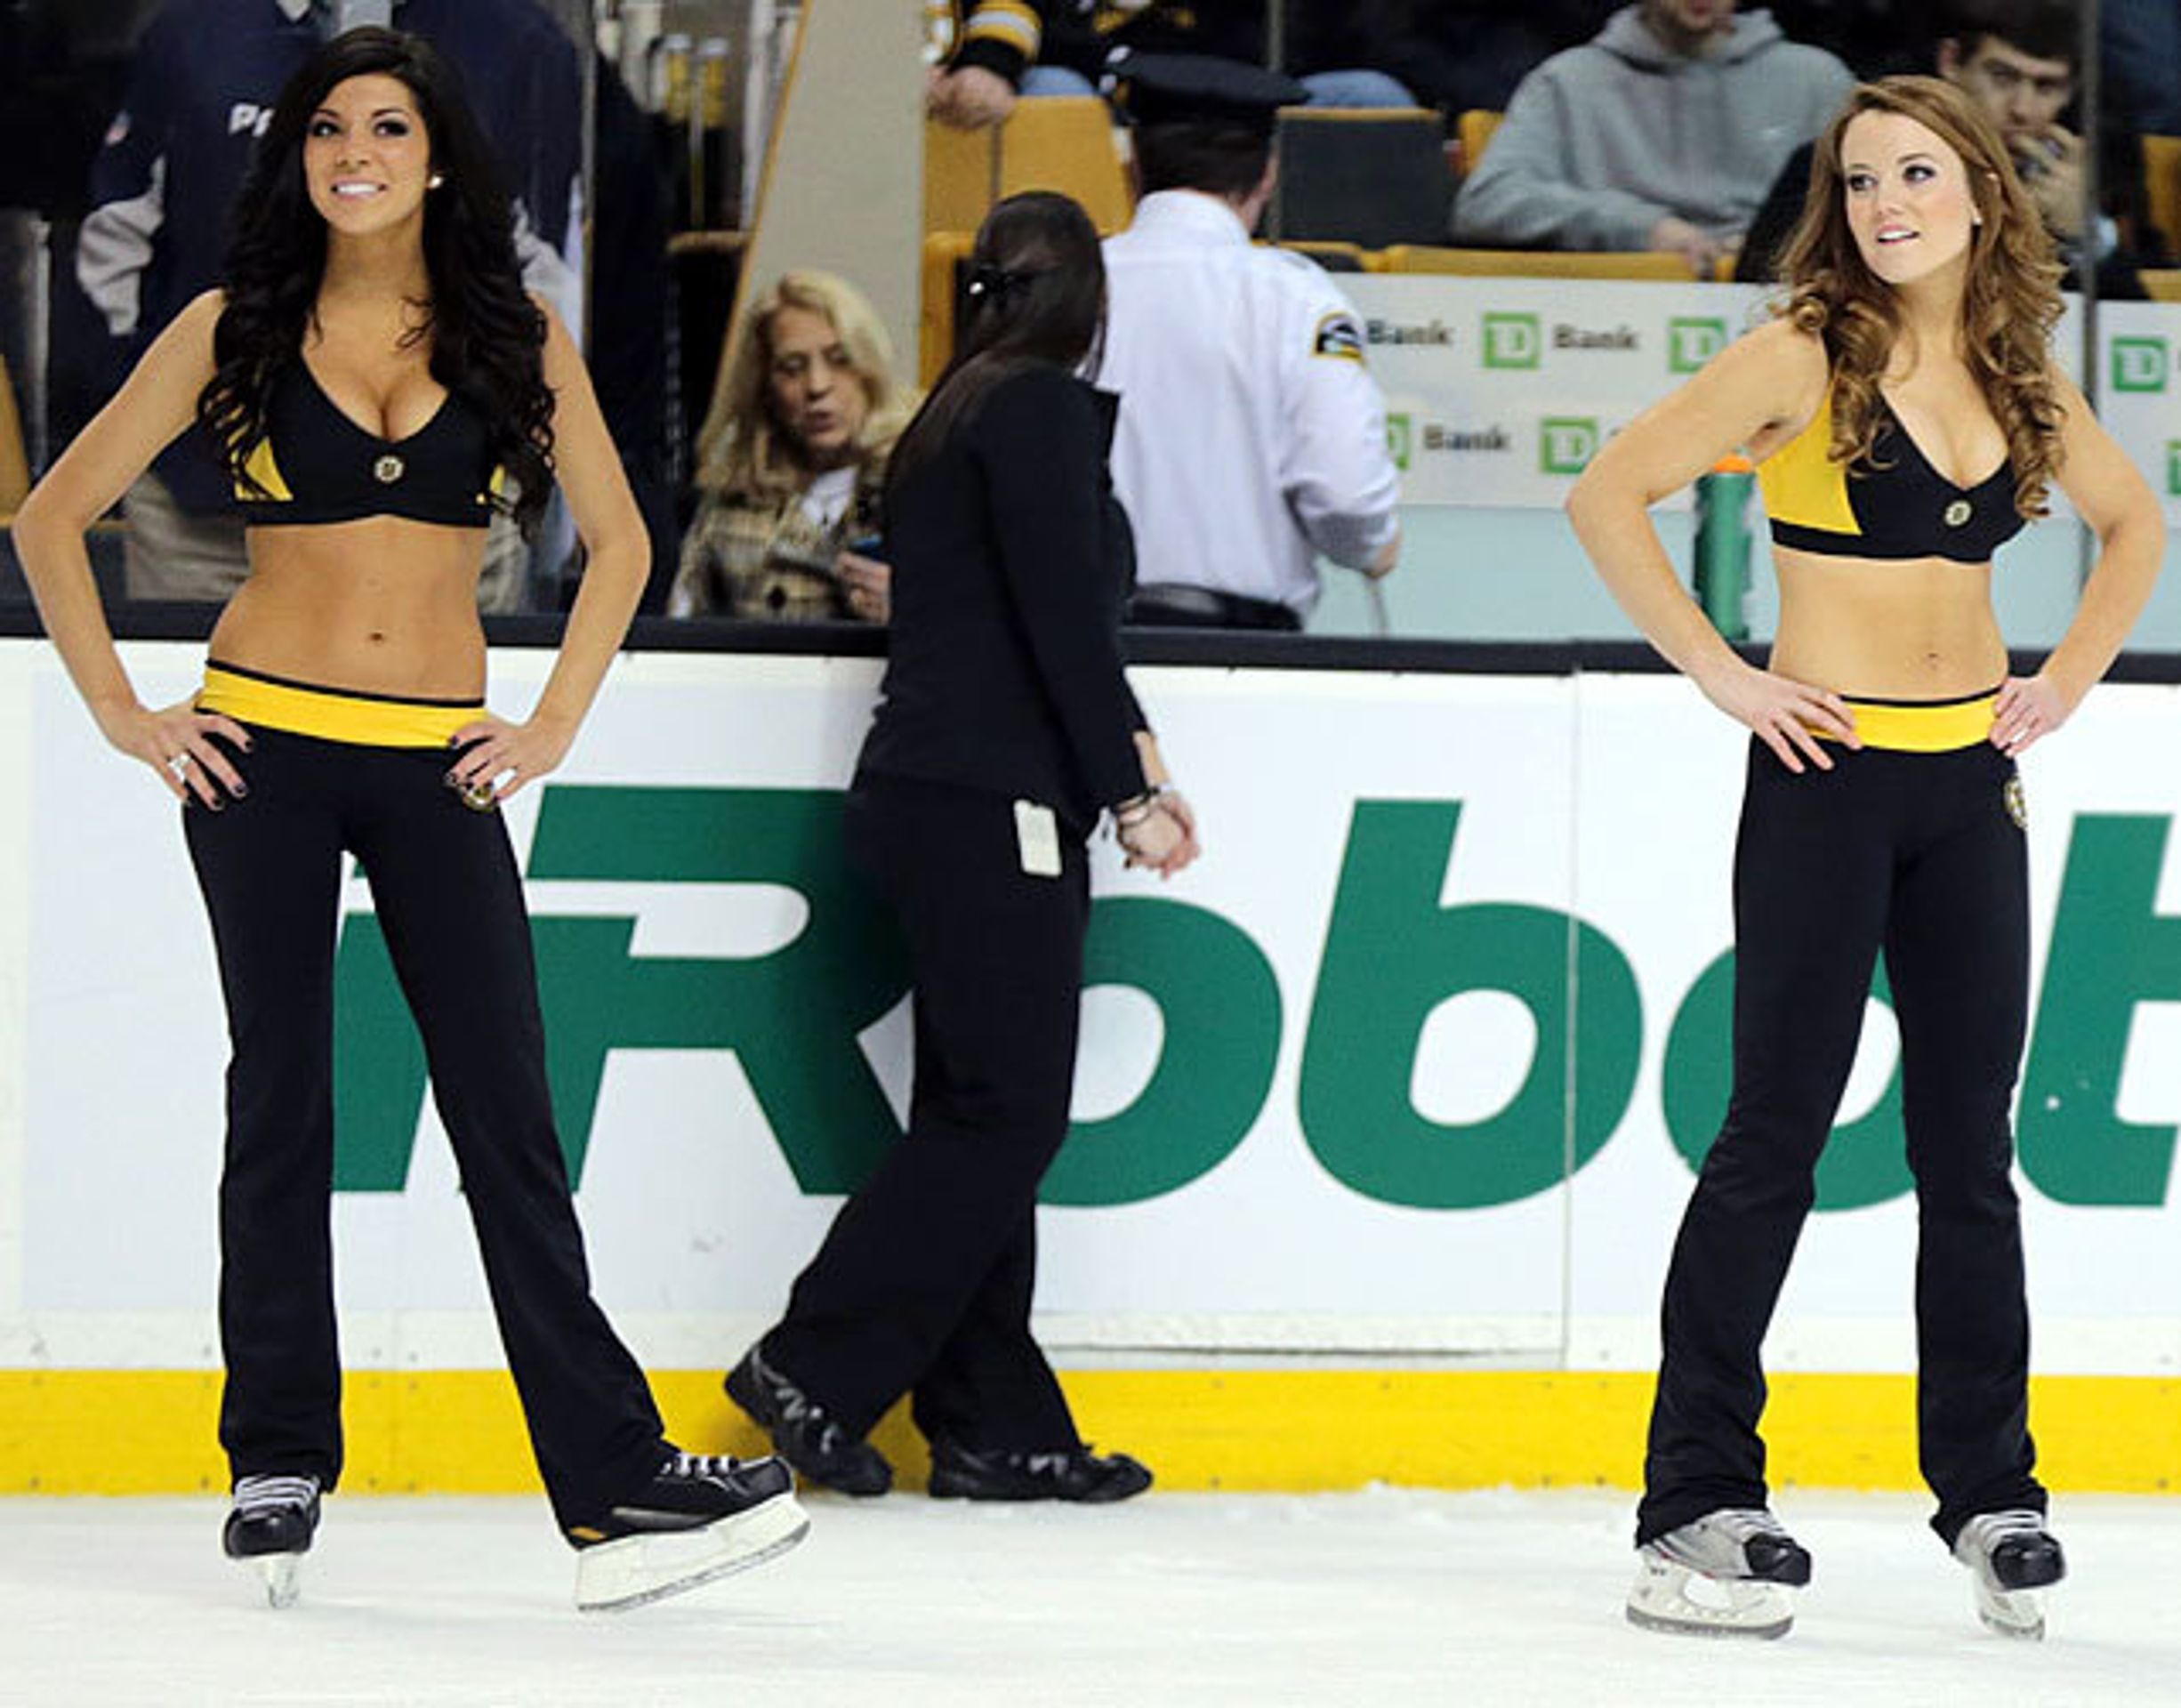 Boston Bruins Ice Girls - 1 - GALERIE: To jsou Jágrova děvčata. Jedna hezčí než druhá (1/16)